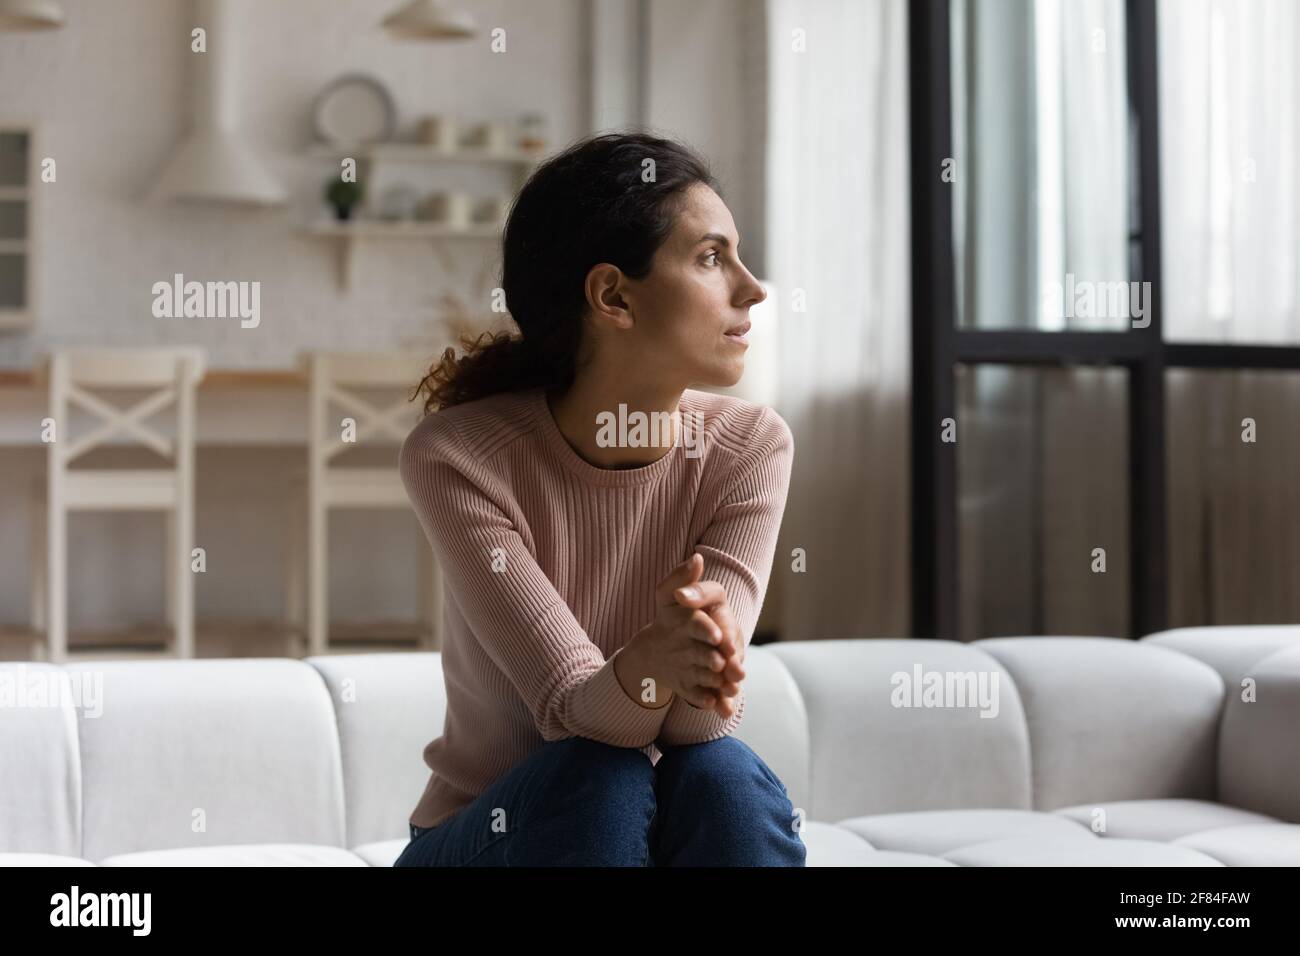 Une femme hispanique inquiète et s'assoit sur un canapé. Attendez-vous à ce qu'elle soit un client important Banque D'Images